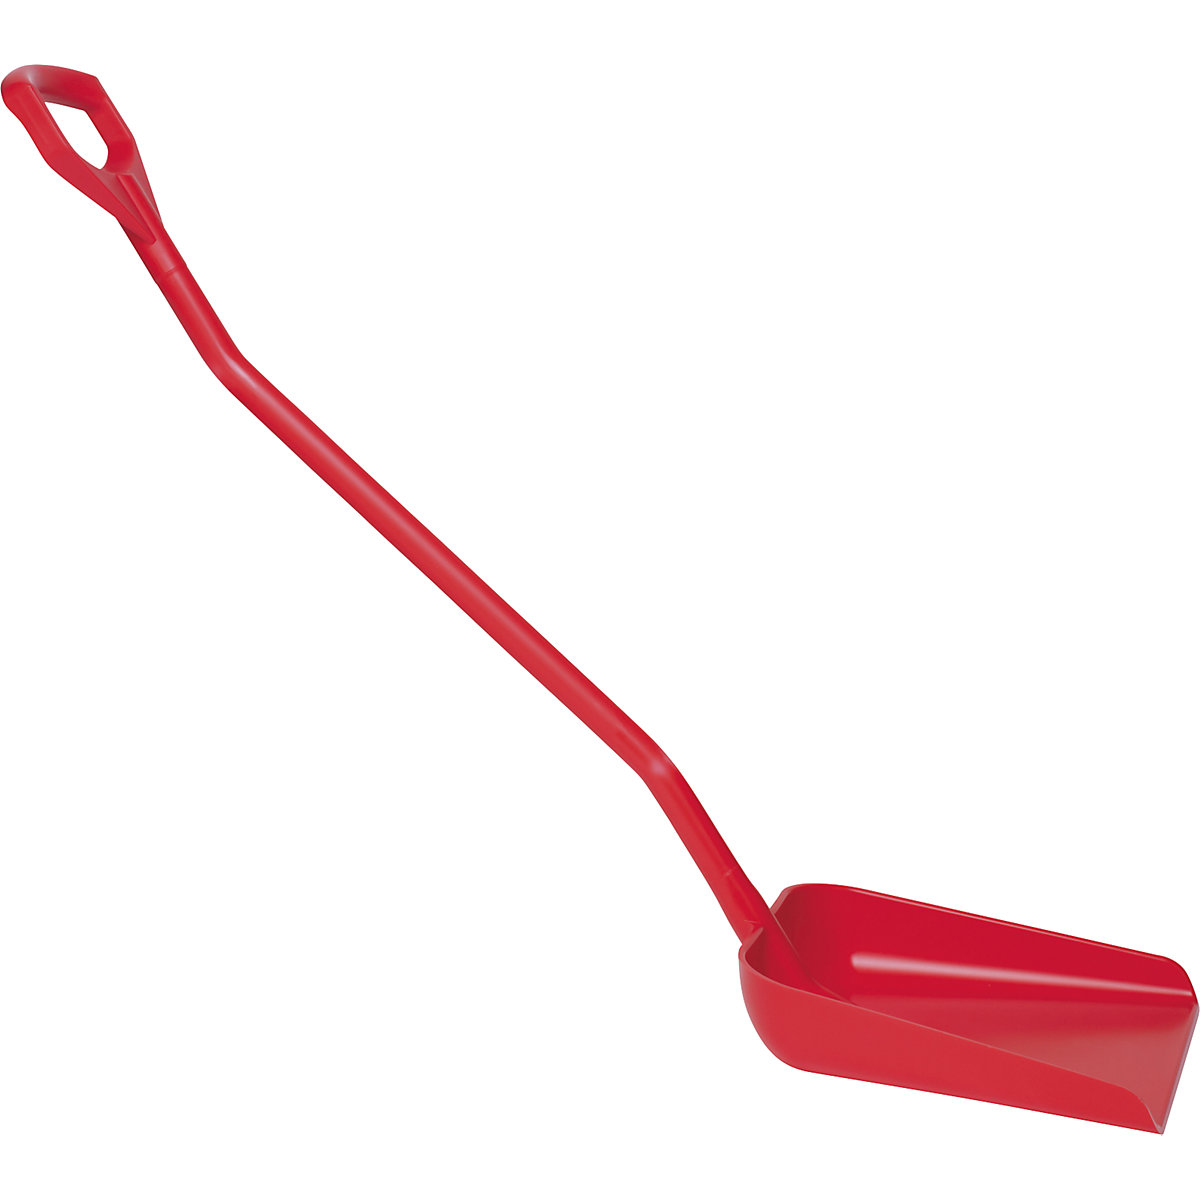 Pelle ergonomique de qualité alimentaire – Vikan, longueur h.t. 1310 mm, rouge-4